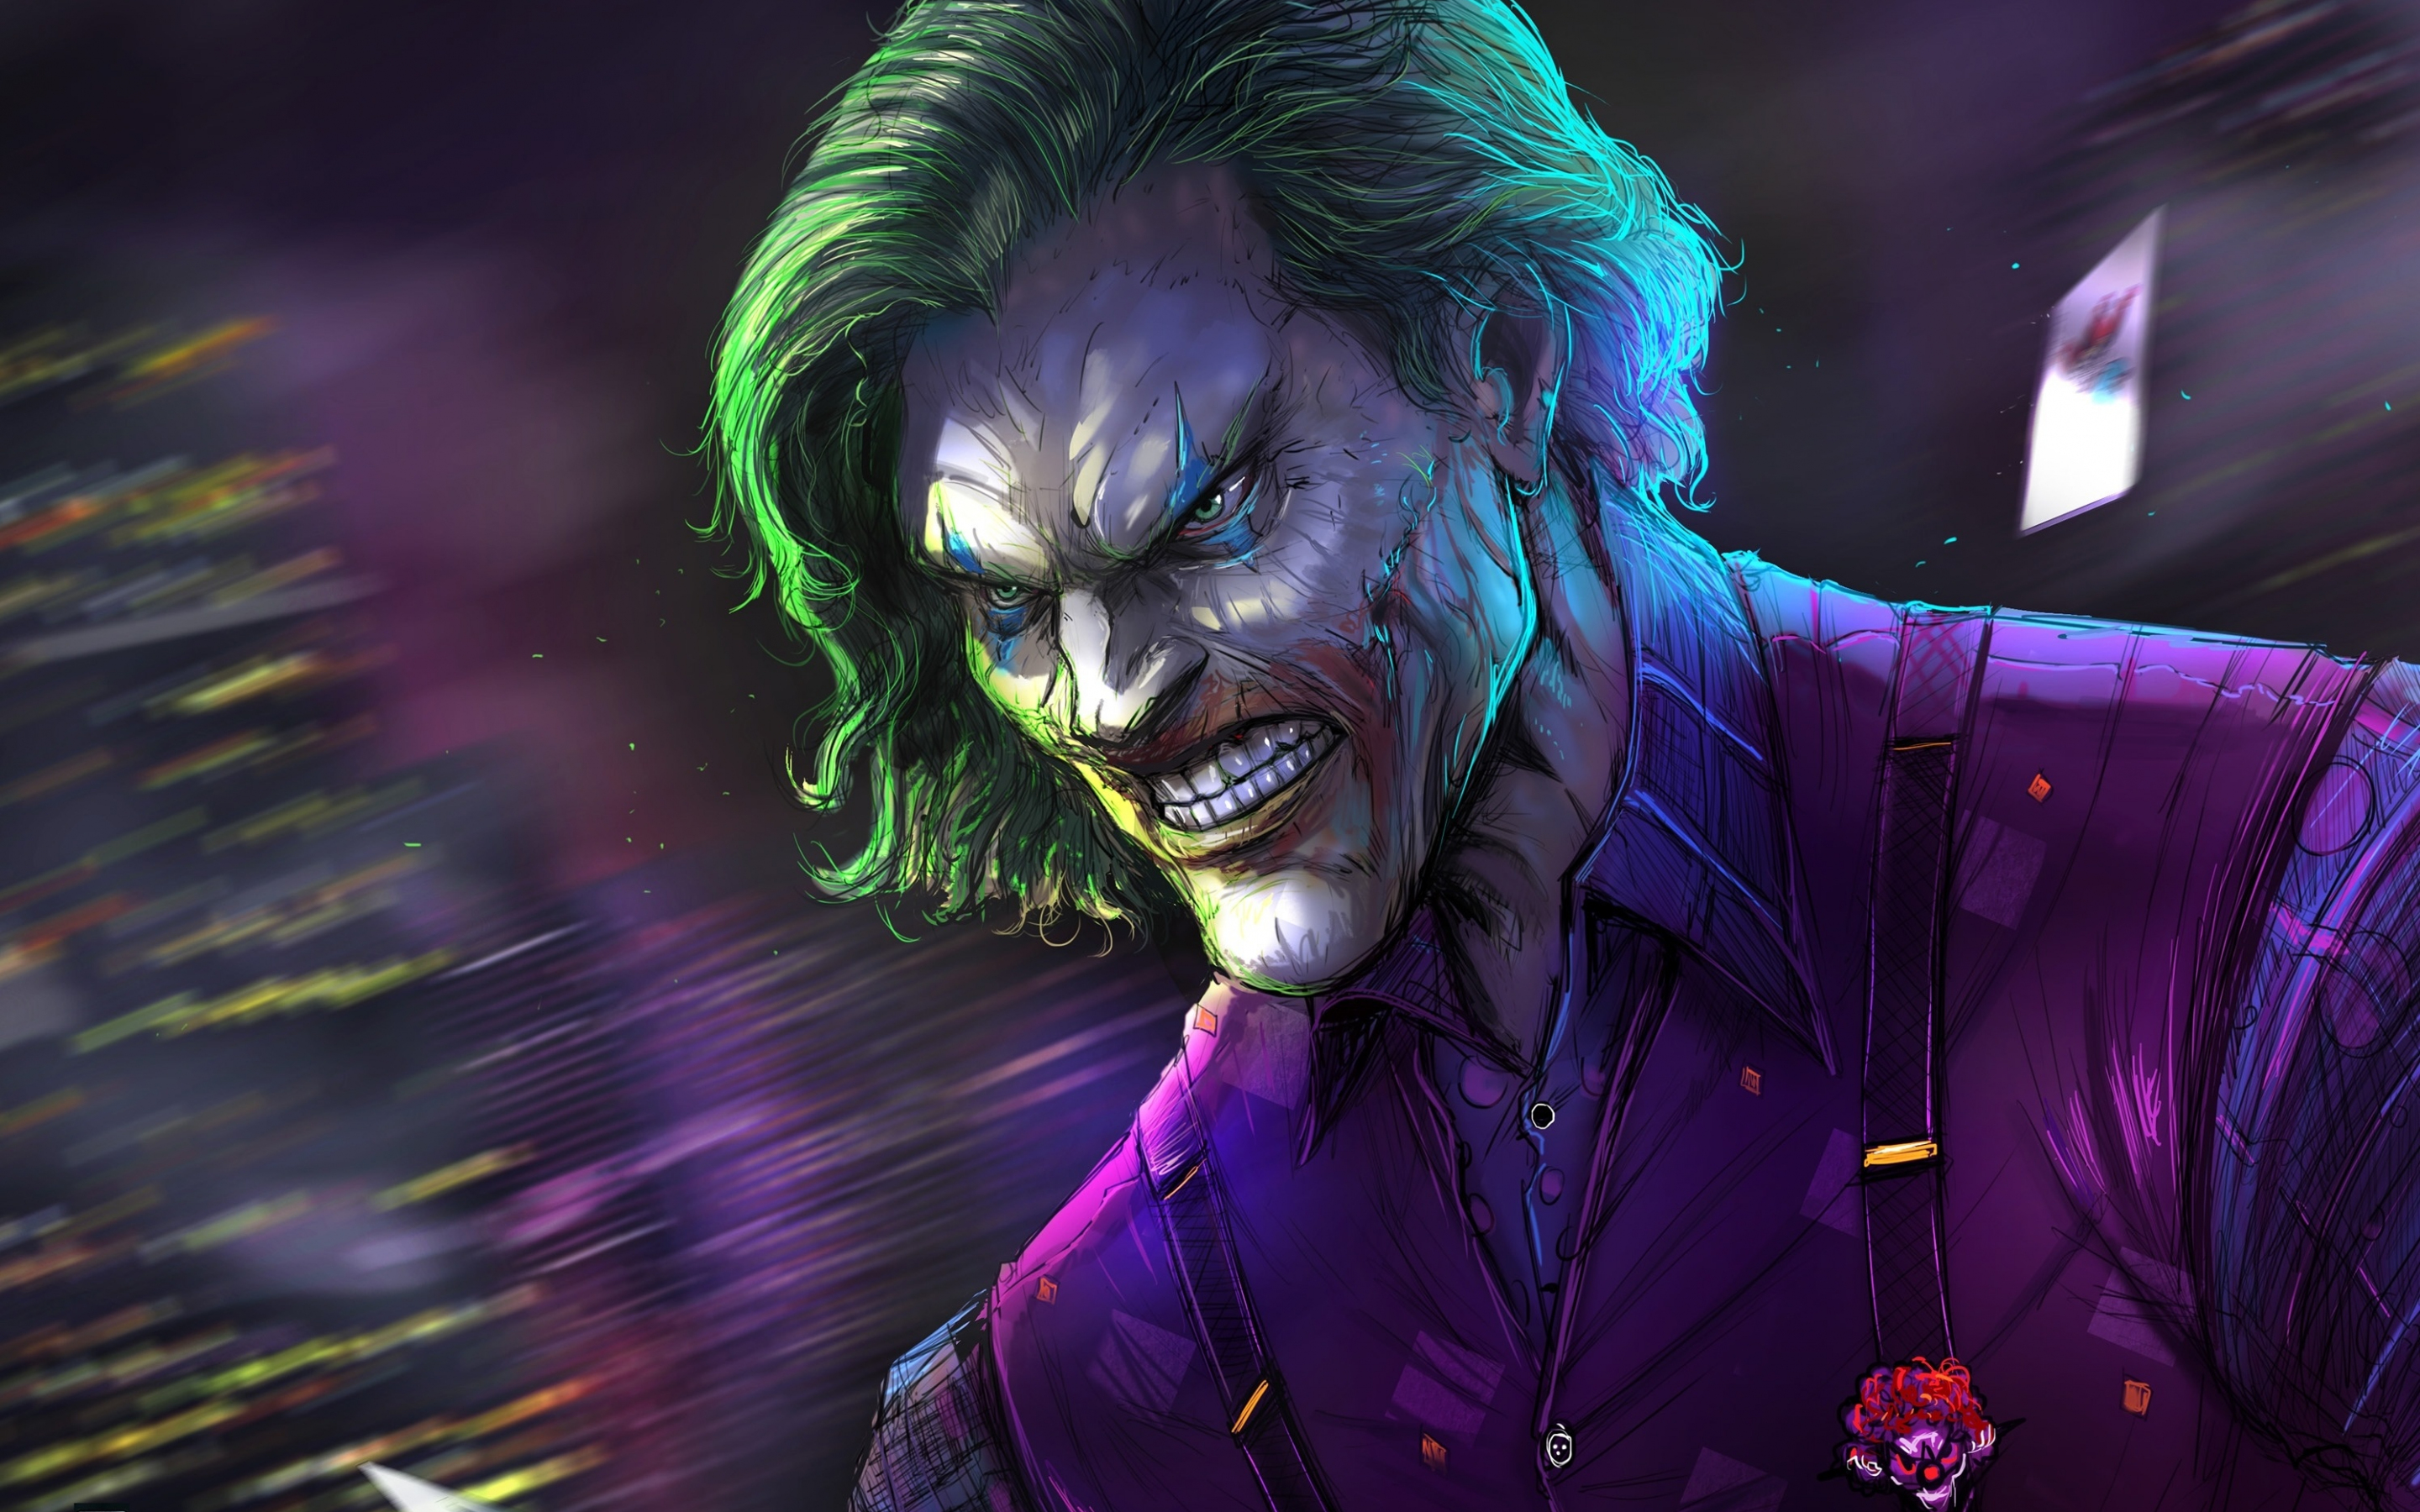 Angry joker, villain, gree hair, villain, dc comics, 2880x1800 wallpaper